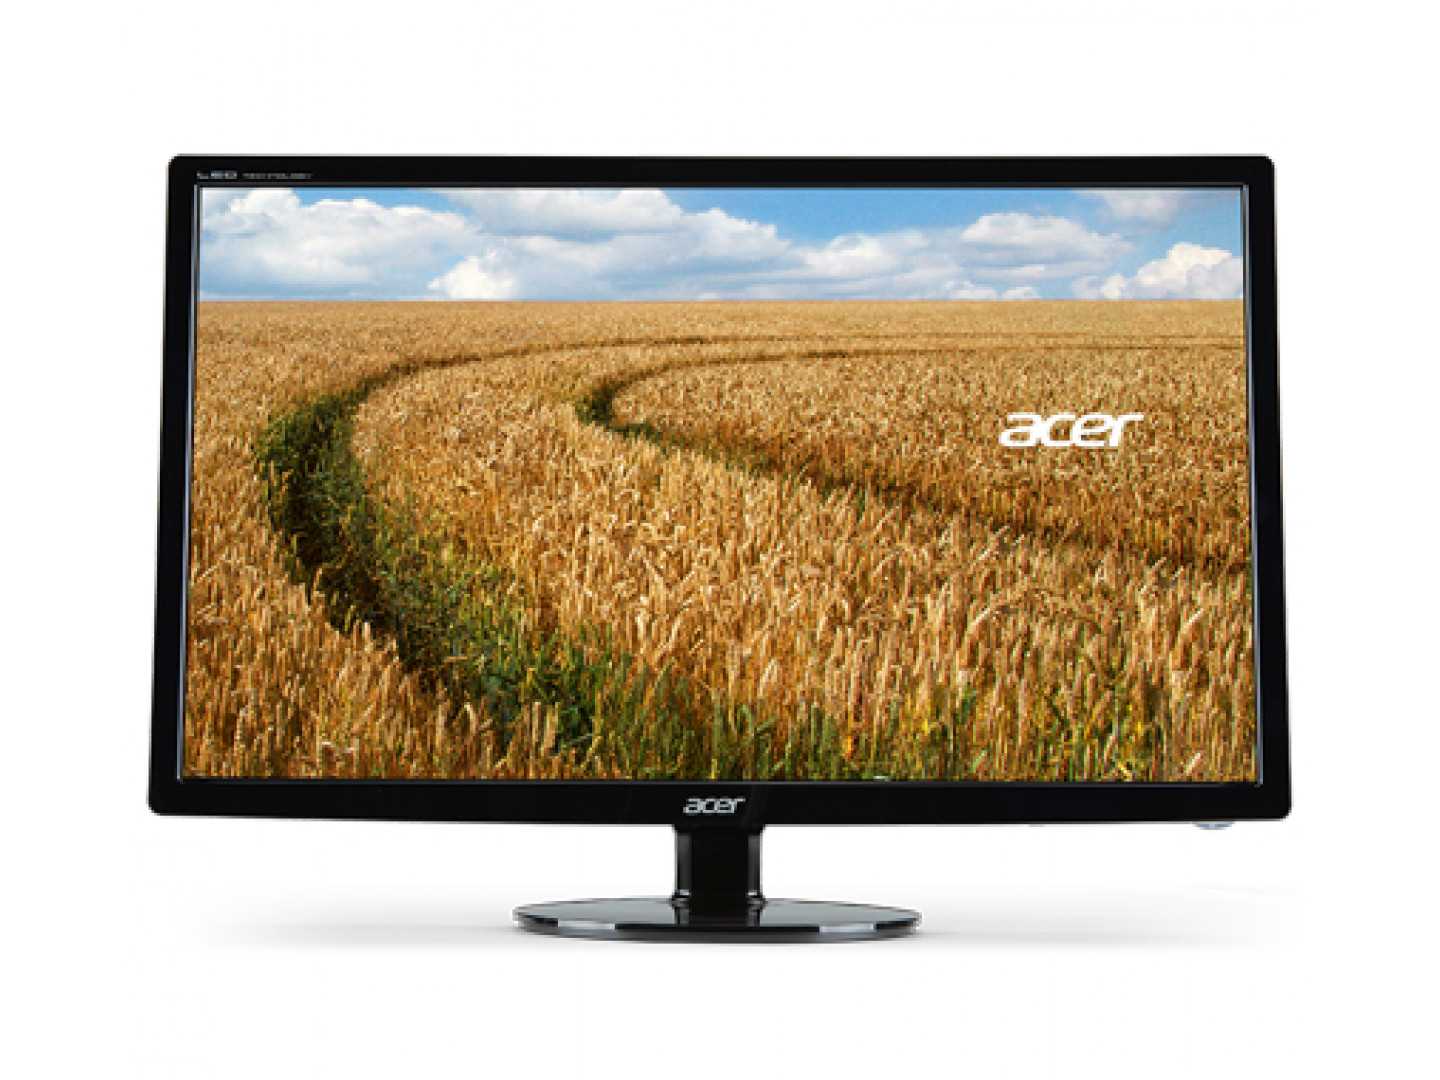 Acer s241hlbbid (черный) - купить , скидки, цена, отзывы, обзор, характеристики - мониторы